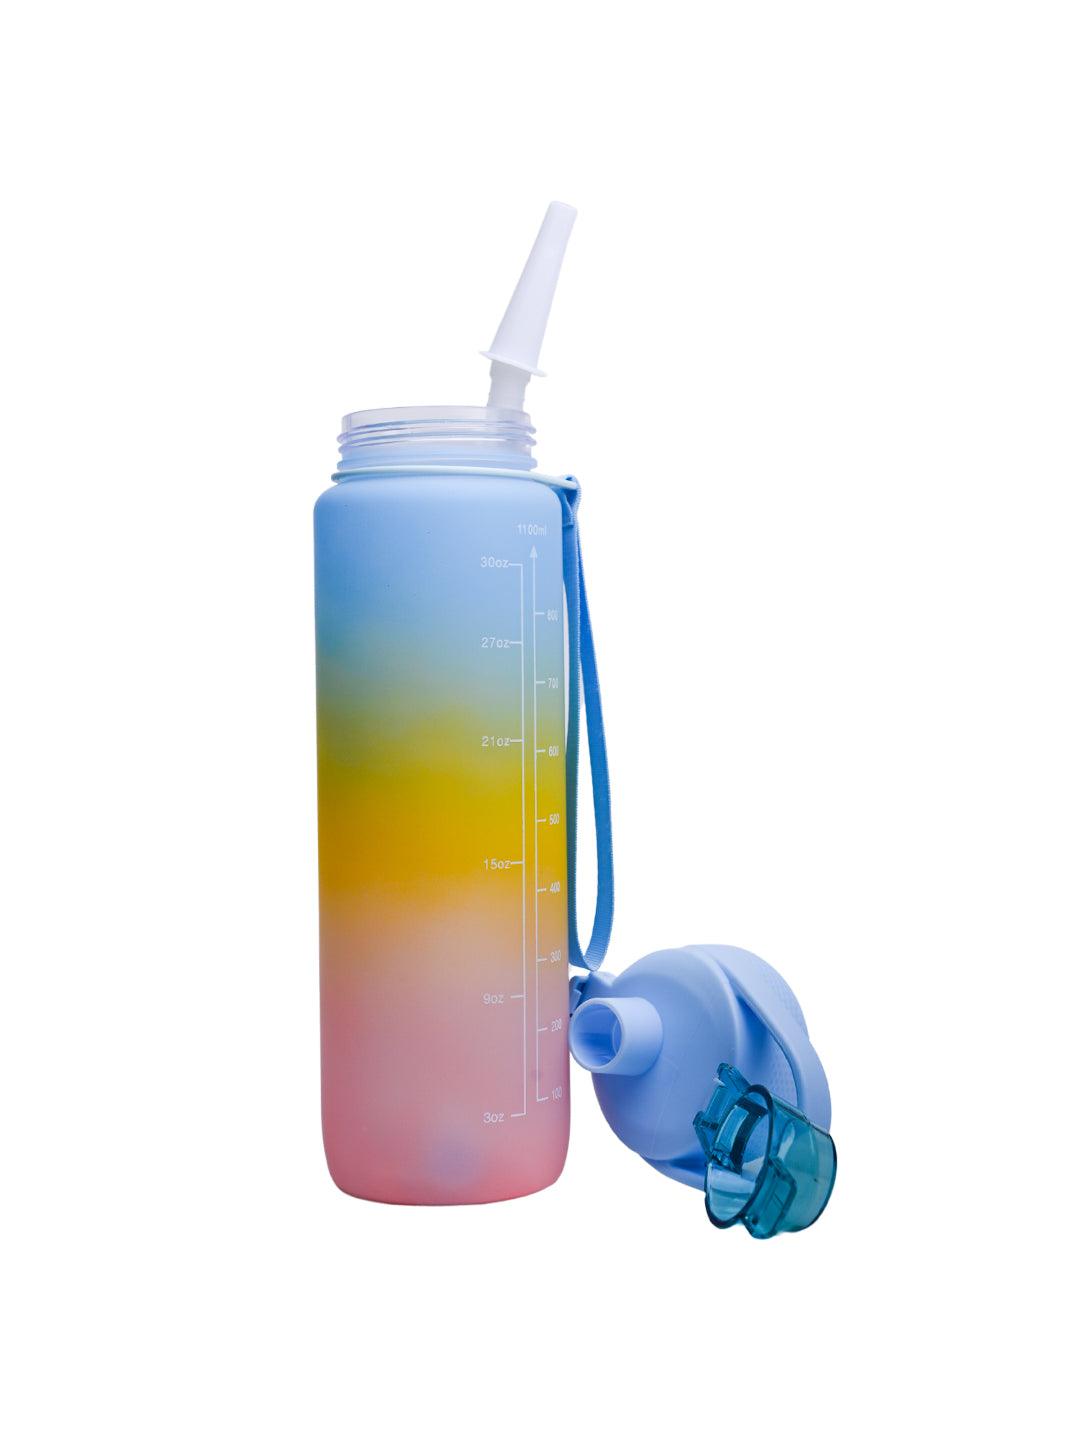 Motivational Sipper Travel Water Bottle, Blue-Yellow-Pink, 1 Liter - MARKET 99